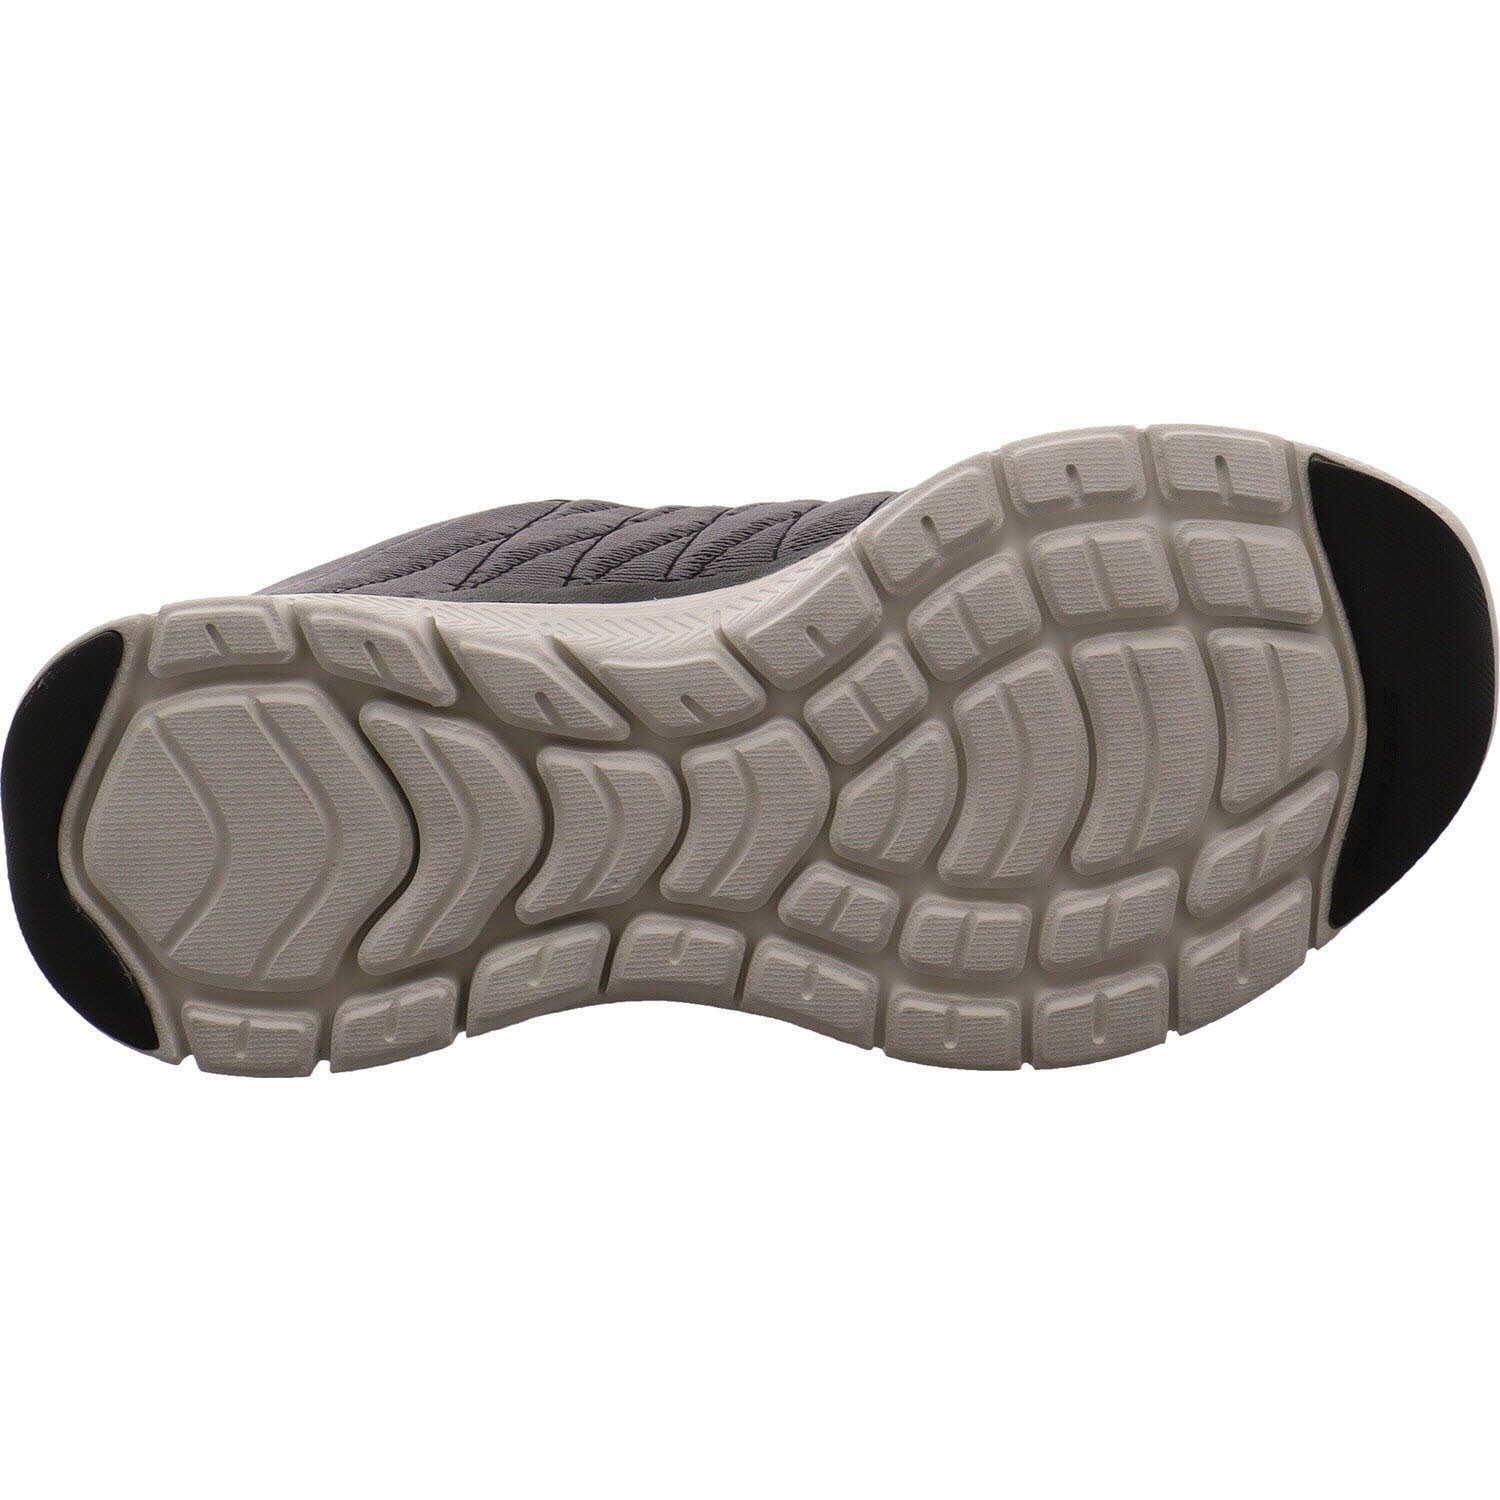 - Advatage Valkin Flex 4.0 Skechers Sneaker